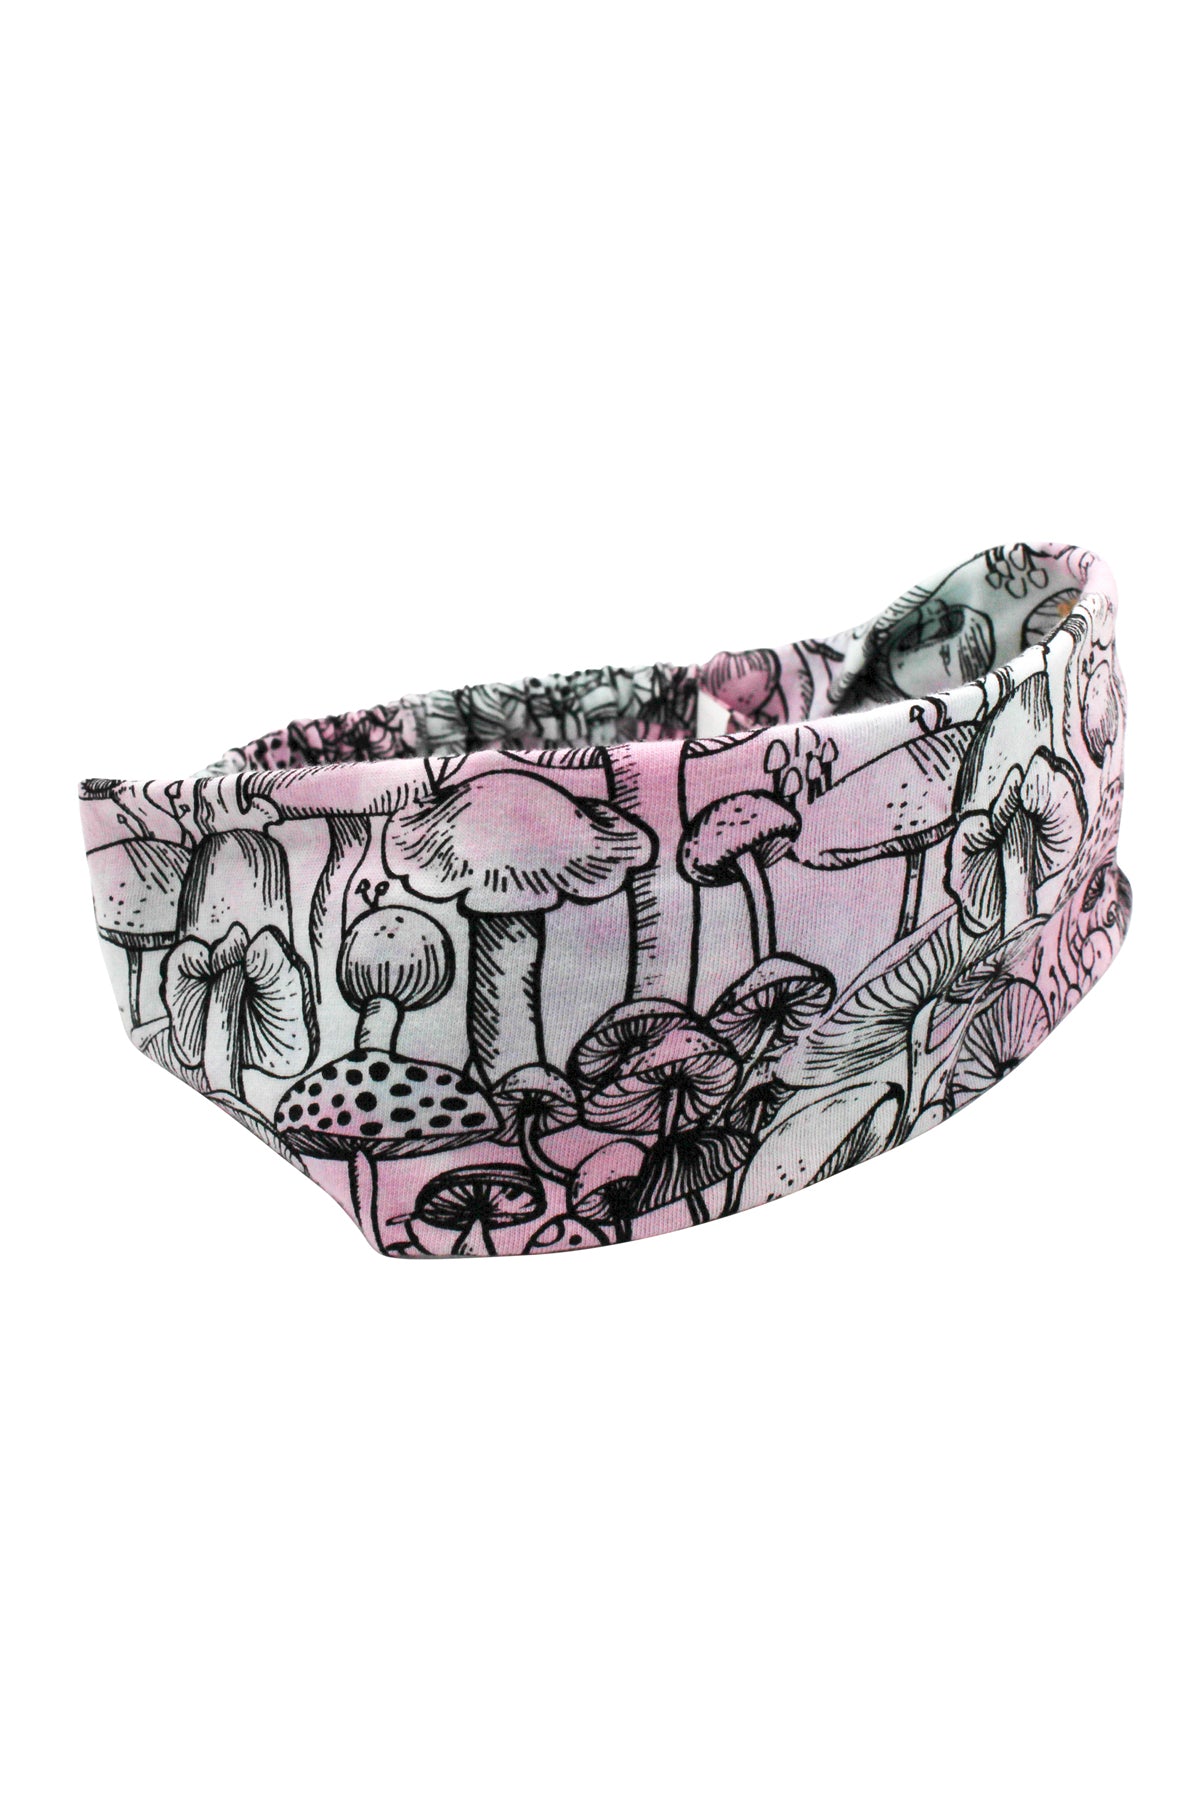 Mushroom Tie-dye Headband: 12pcs/Pkt